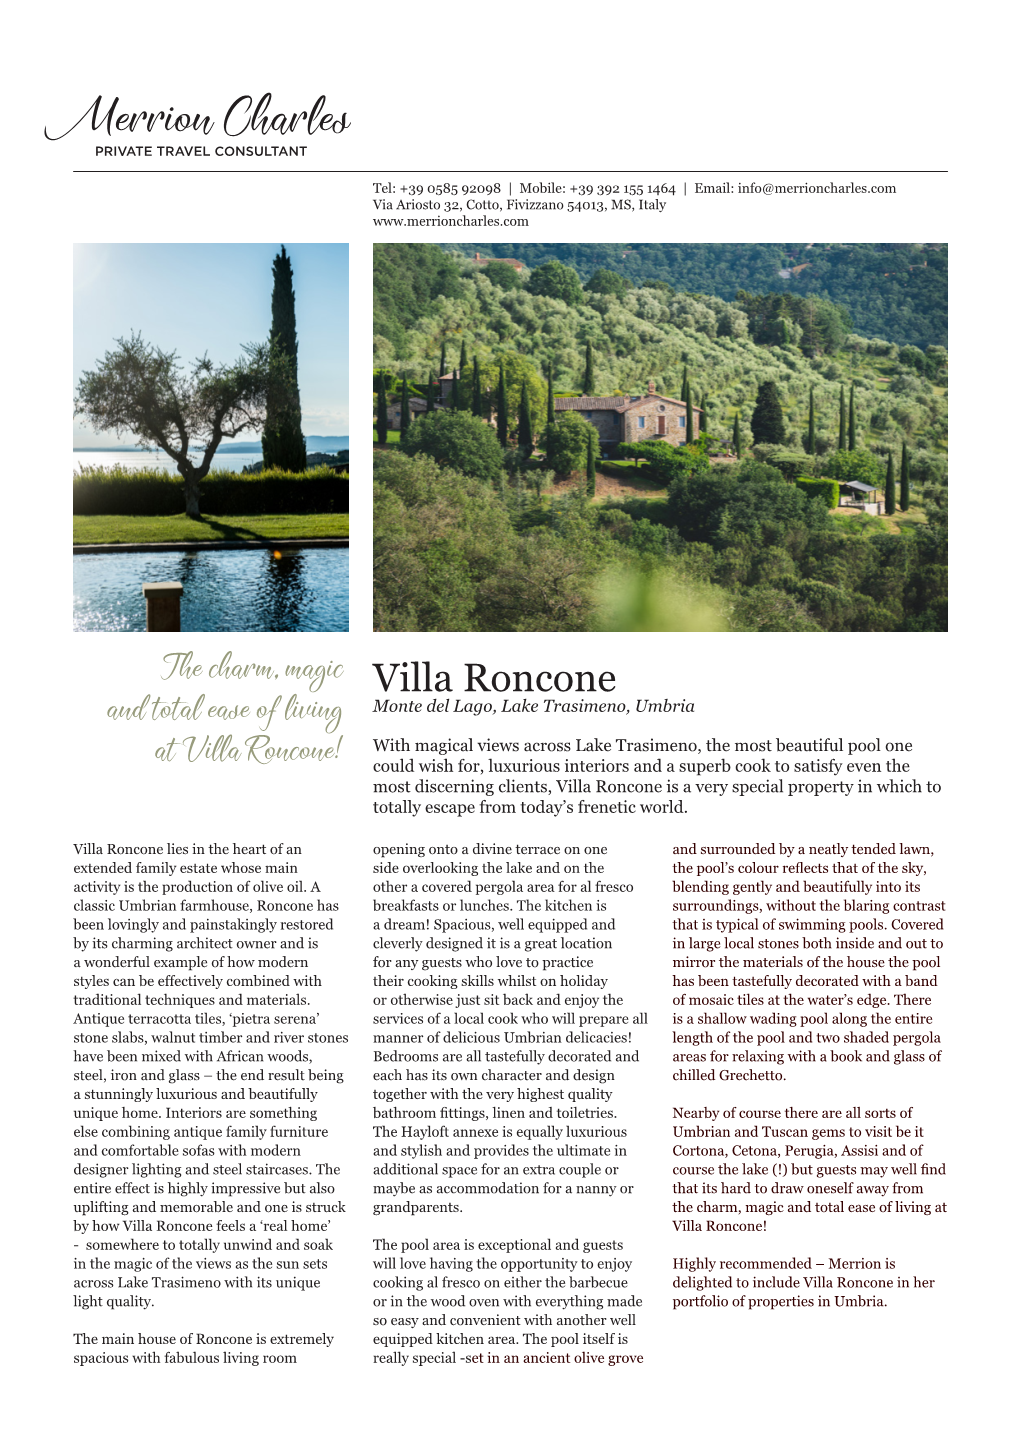 Villa Roncone